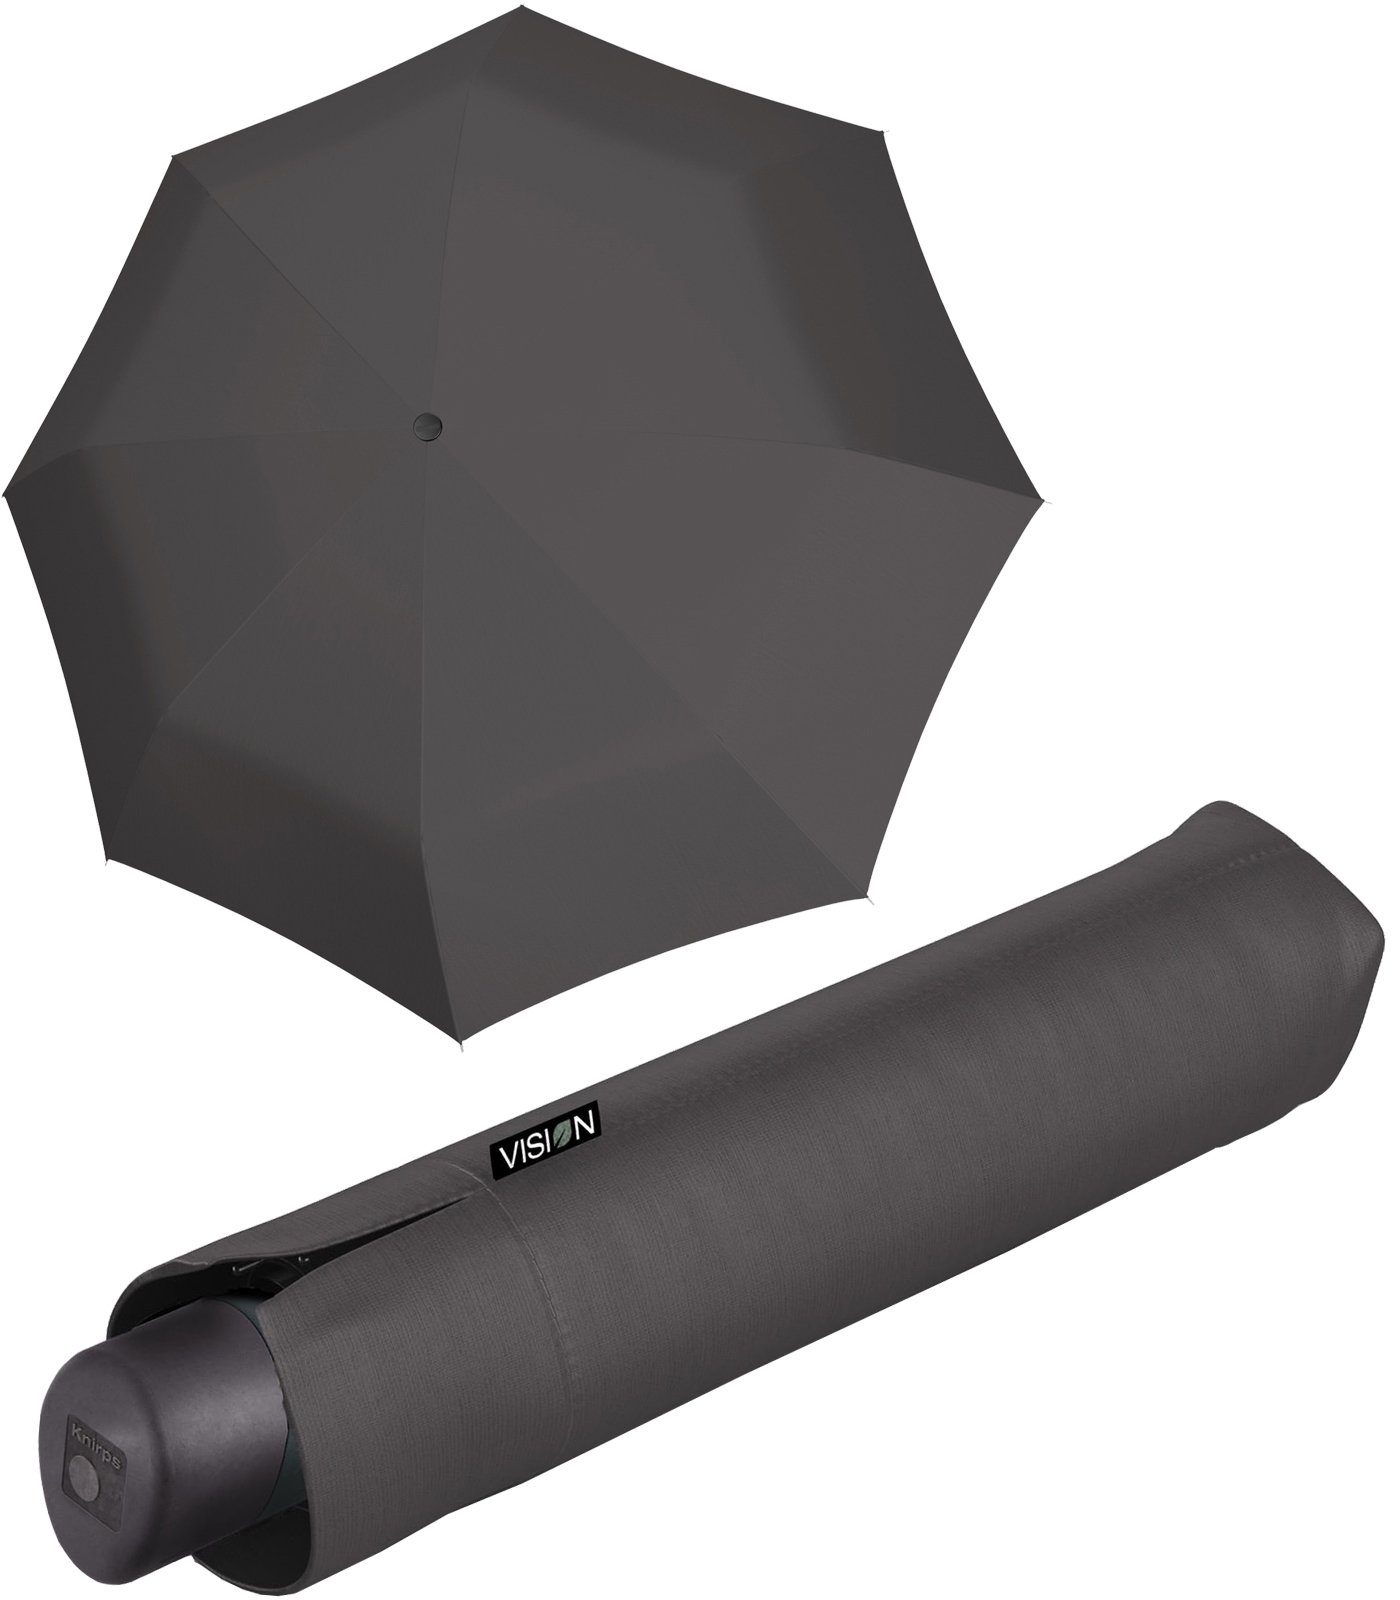 Knirps® Taschenregenschirm Vision Manual - nachhaltiger Damen-Regenschirm, recyceltes PET, PFC-frei beschichtet - dust grau